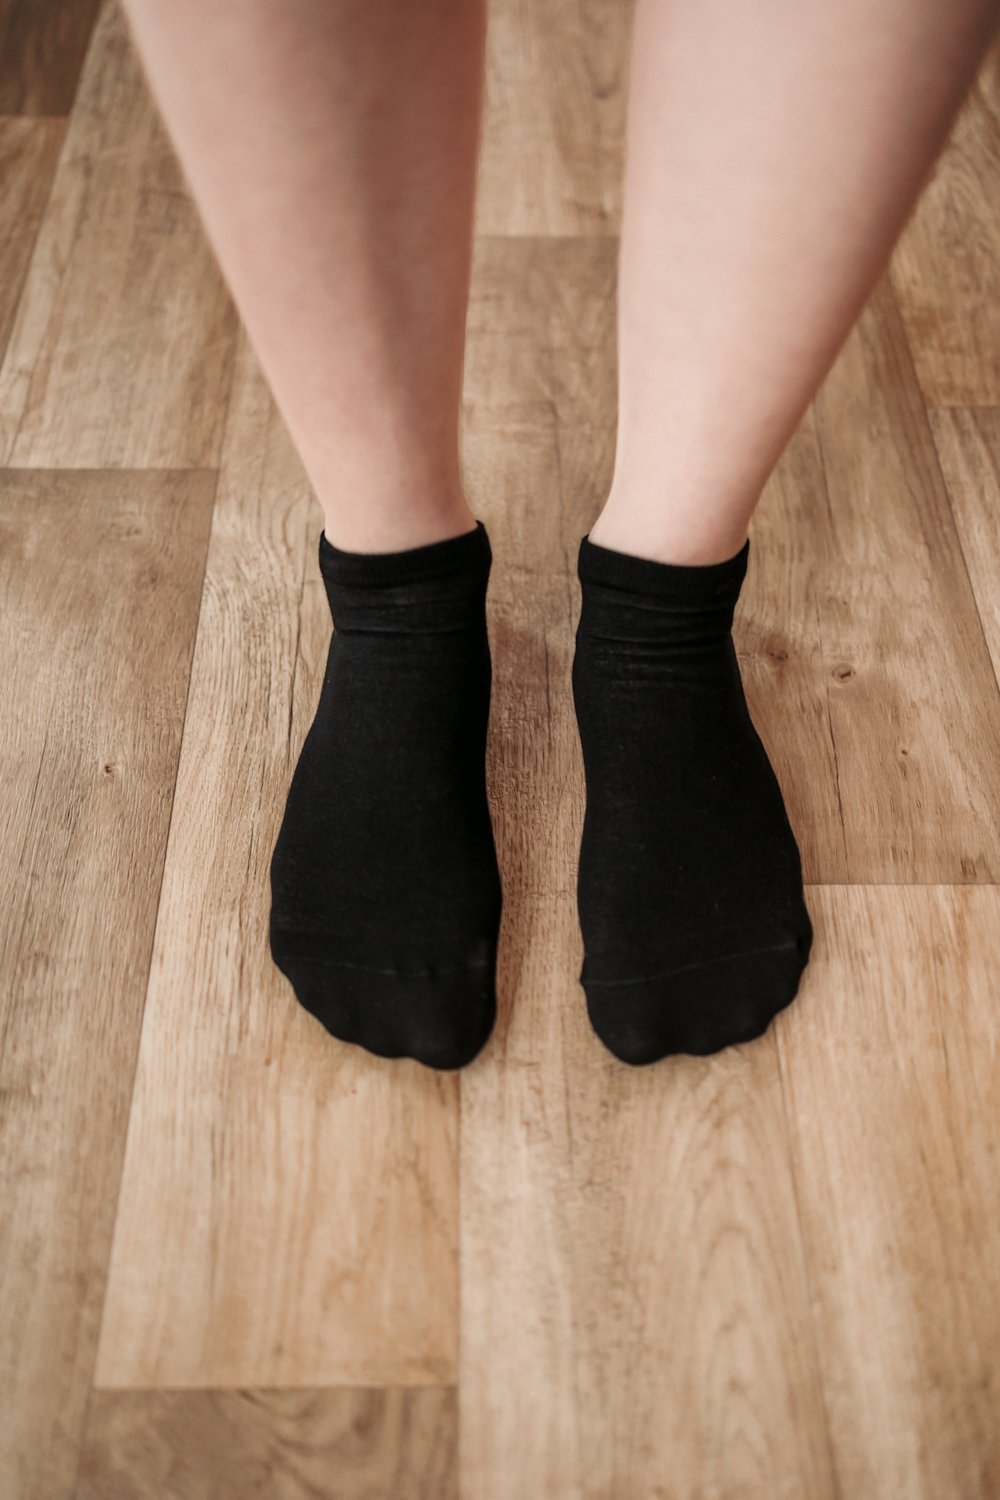 Be Lenka barefootové ponožky nízké černé Velikosti ponožek, rukavic: 35-38